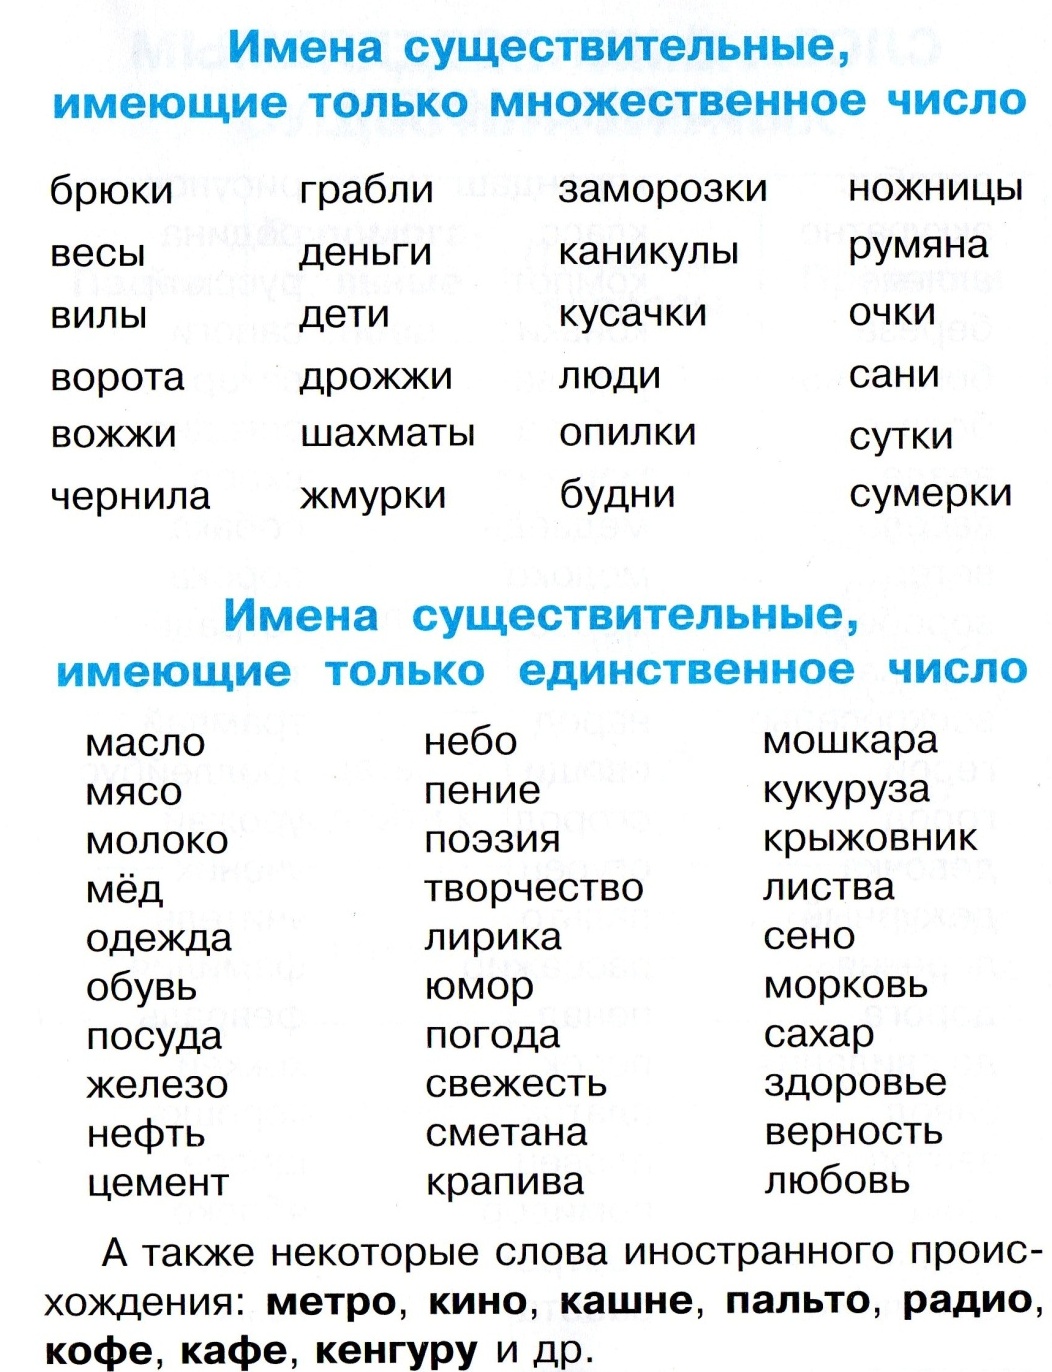 Все существительные слова в русском языке. Слова которые употребляются только во множественном числе. Имена существительные употребляющиеся только во множественном числе. Слова только во множествомчисле. Слова только во множественном числе.